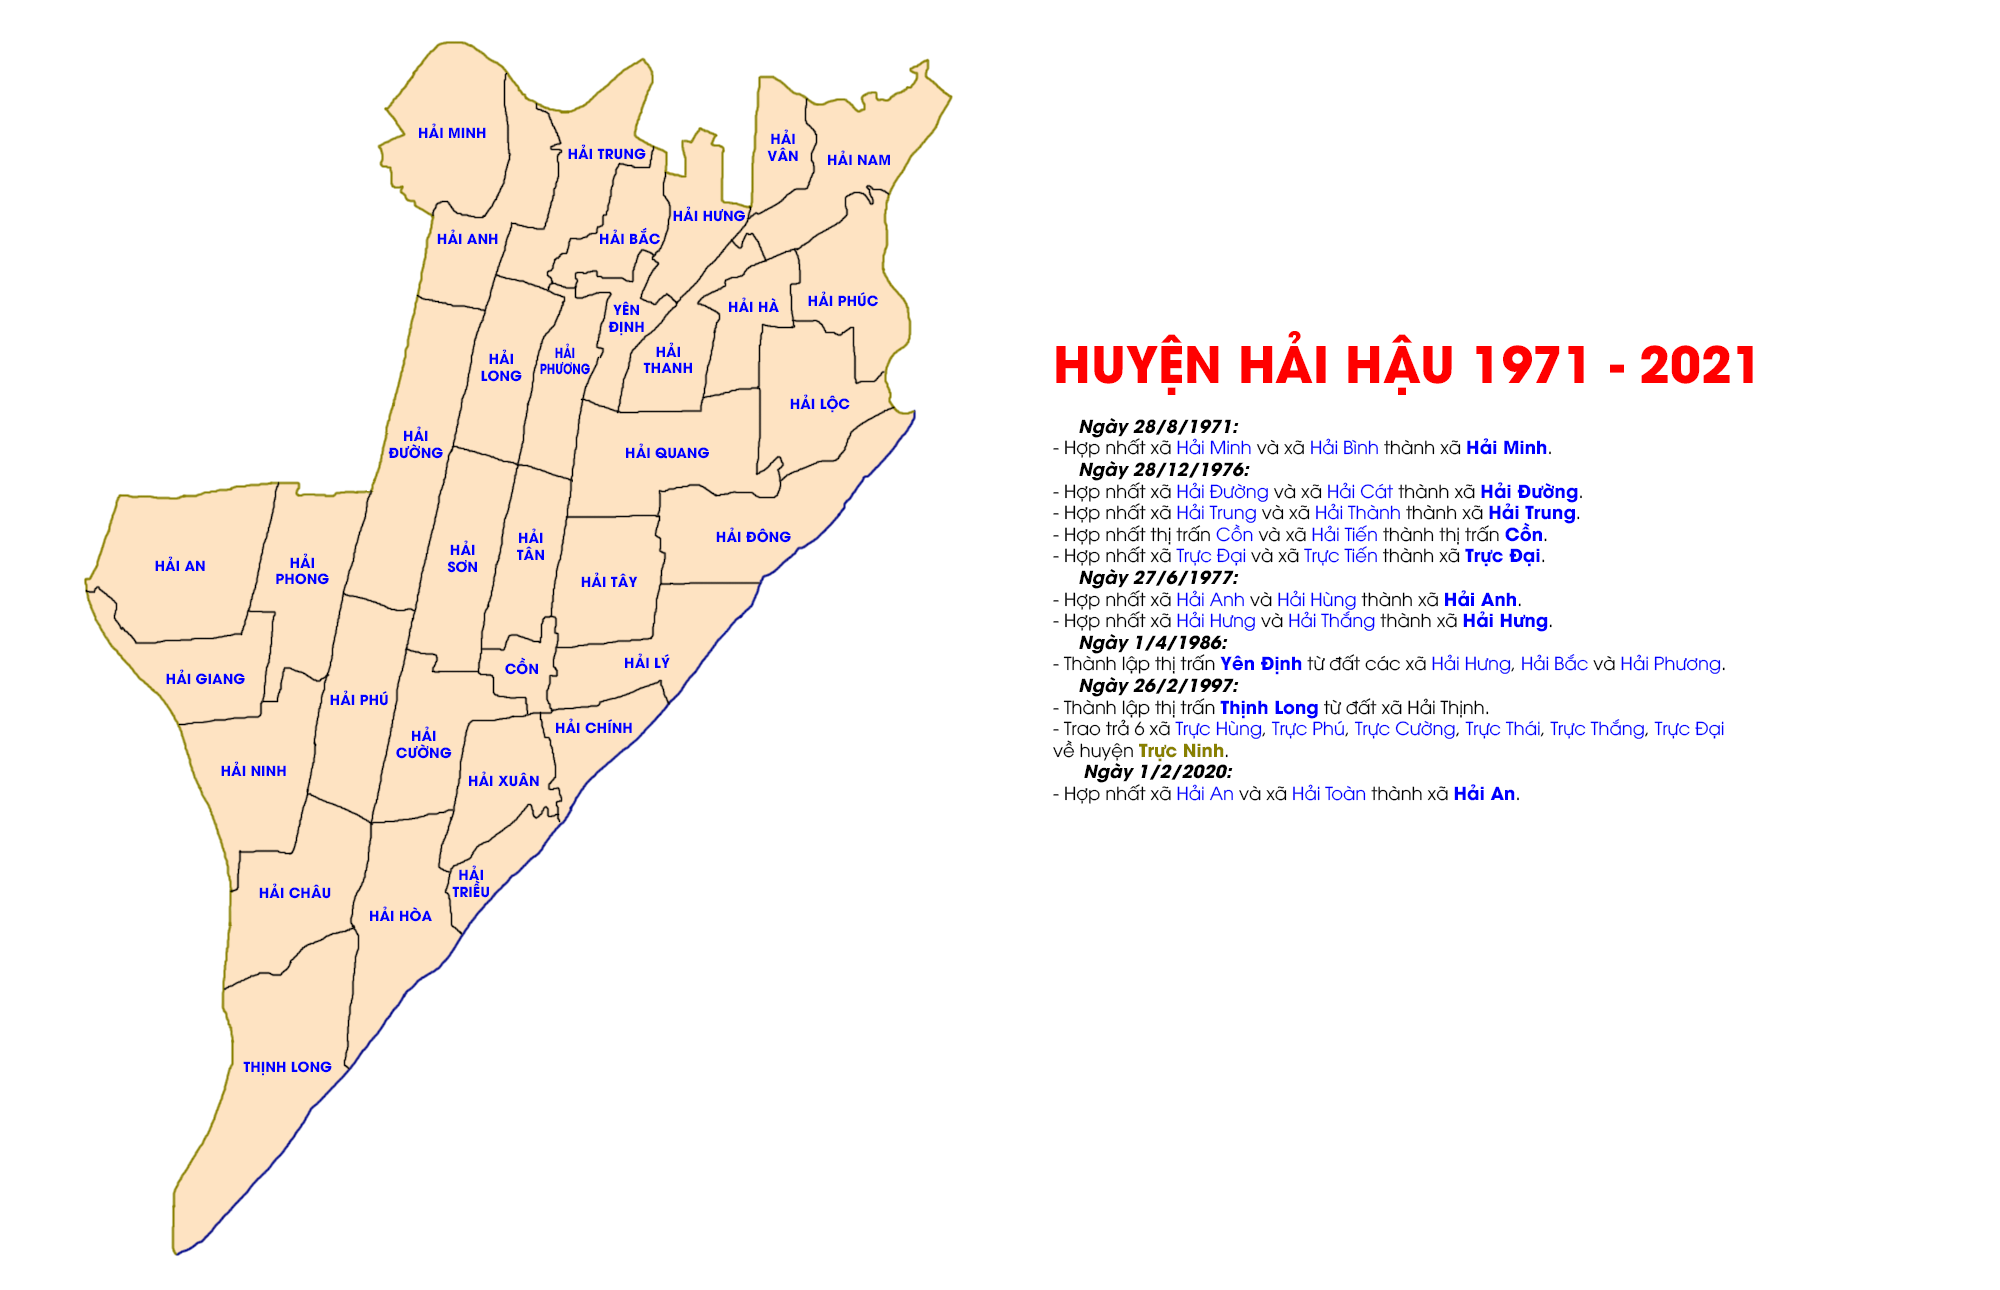 Huyện Hải Hậu từ năm 1971 đến nay